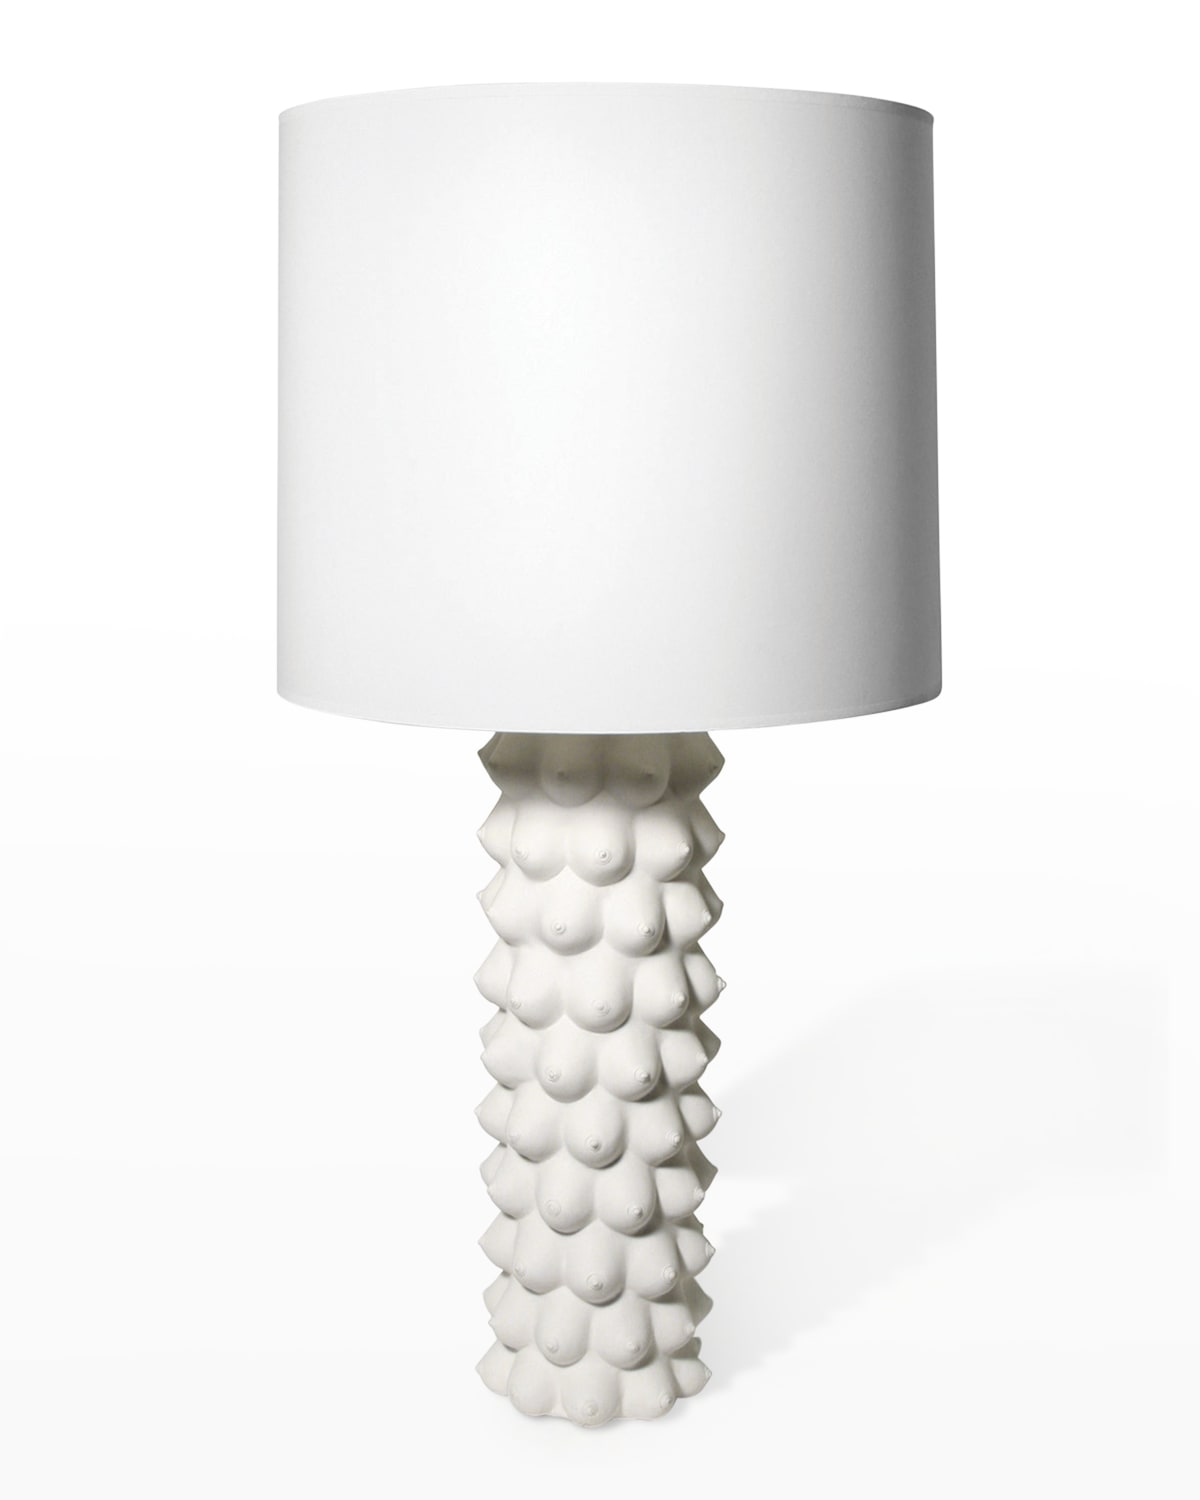 Jonathan Adler Georgia Table Lamp, White